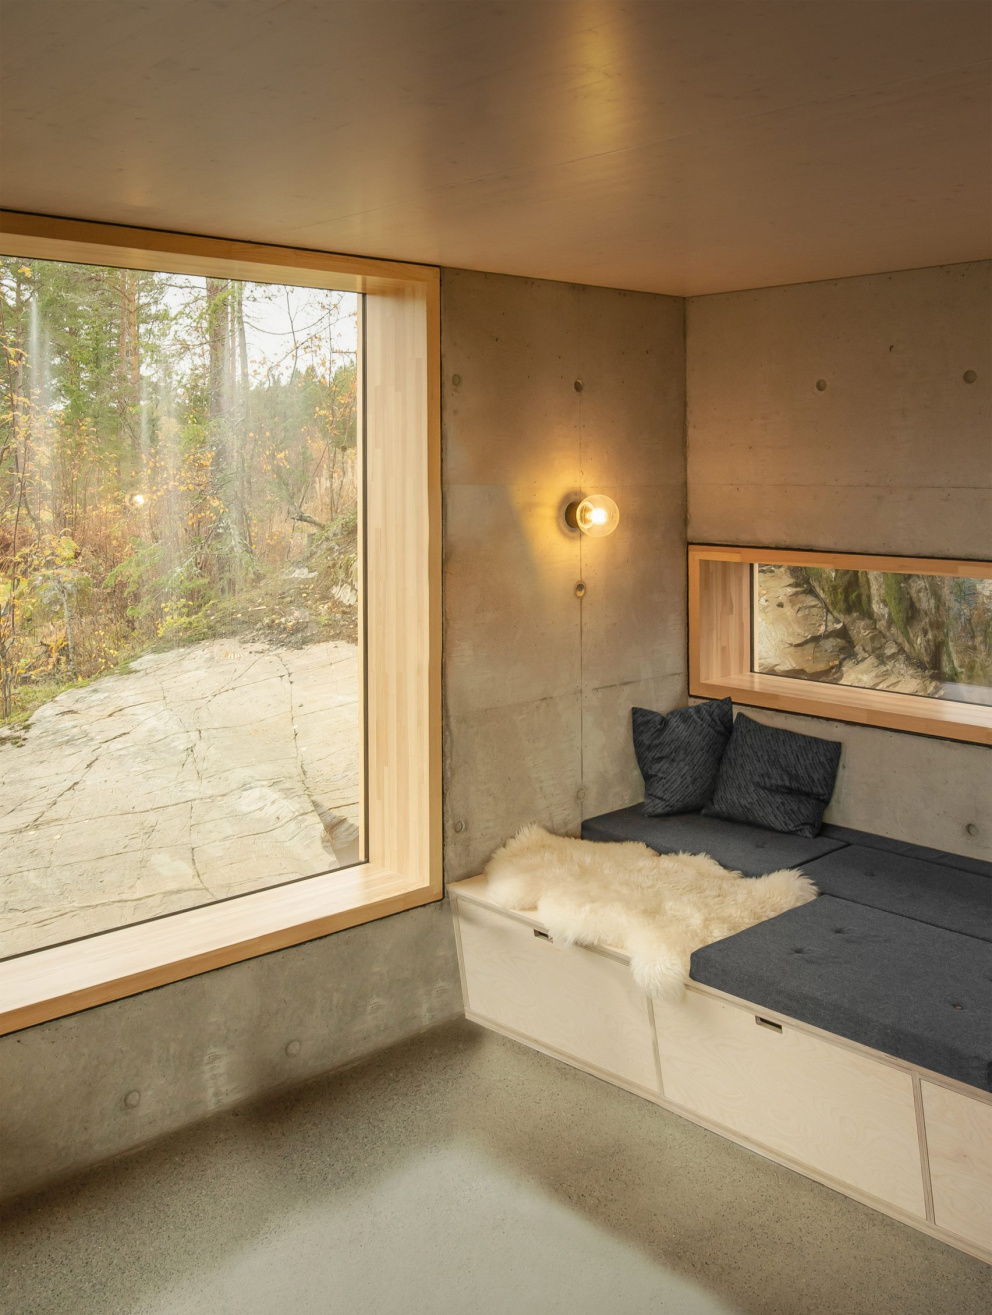 Surový beton krásně navazuje na skálu, na které je chata postavena. Útulnost a teplo dodávají interiéru přírodní materiály, jako dřevo a kožešiny.
